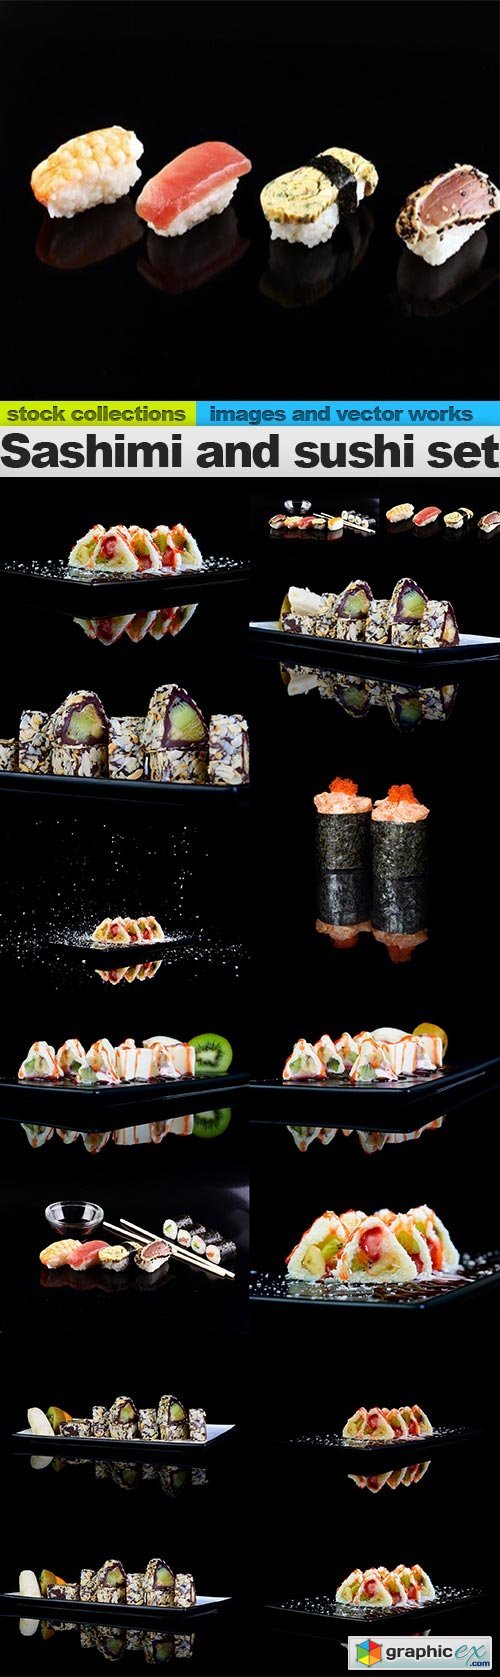 Sashimi and sushi set, 15 x UHQ JPEG